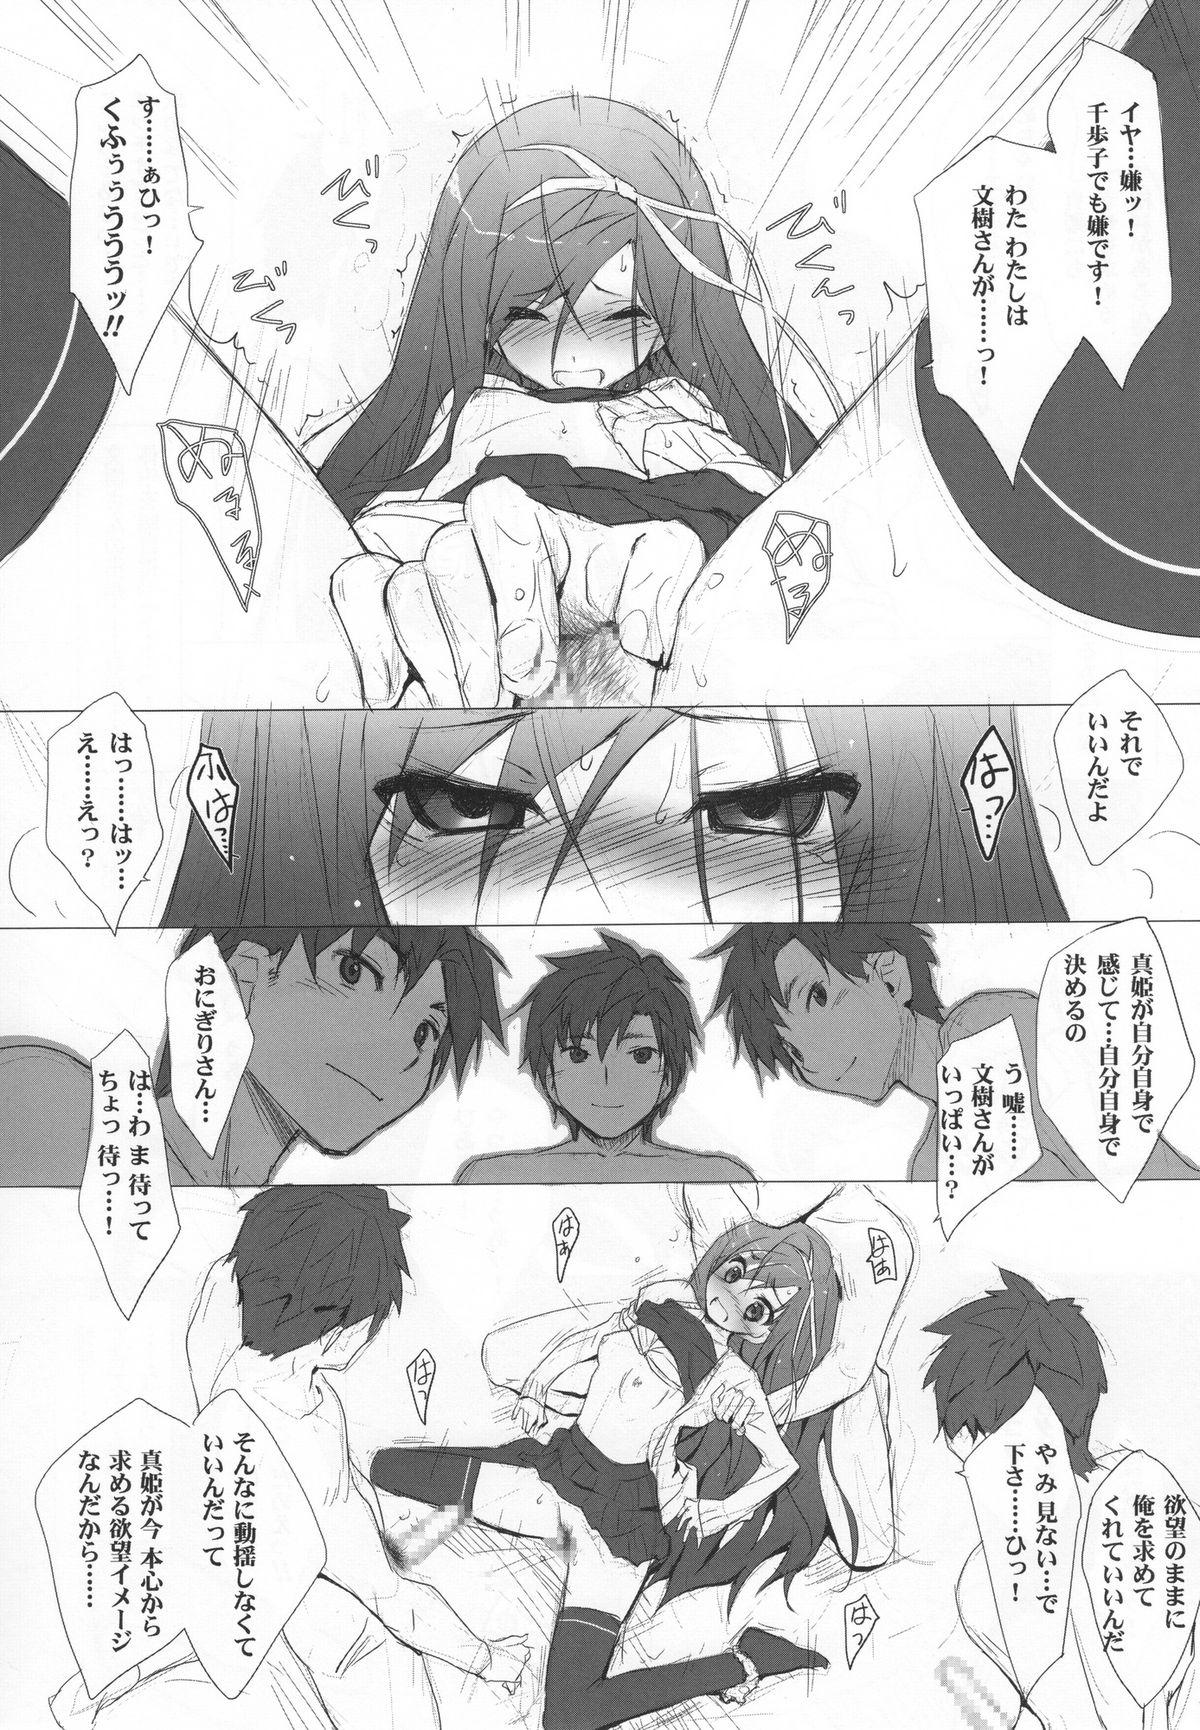 Throat Kyuupon! 4 | Q-pon! 4 - Gengetsu no pandora Guys - Page 10